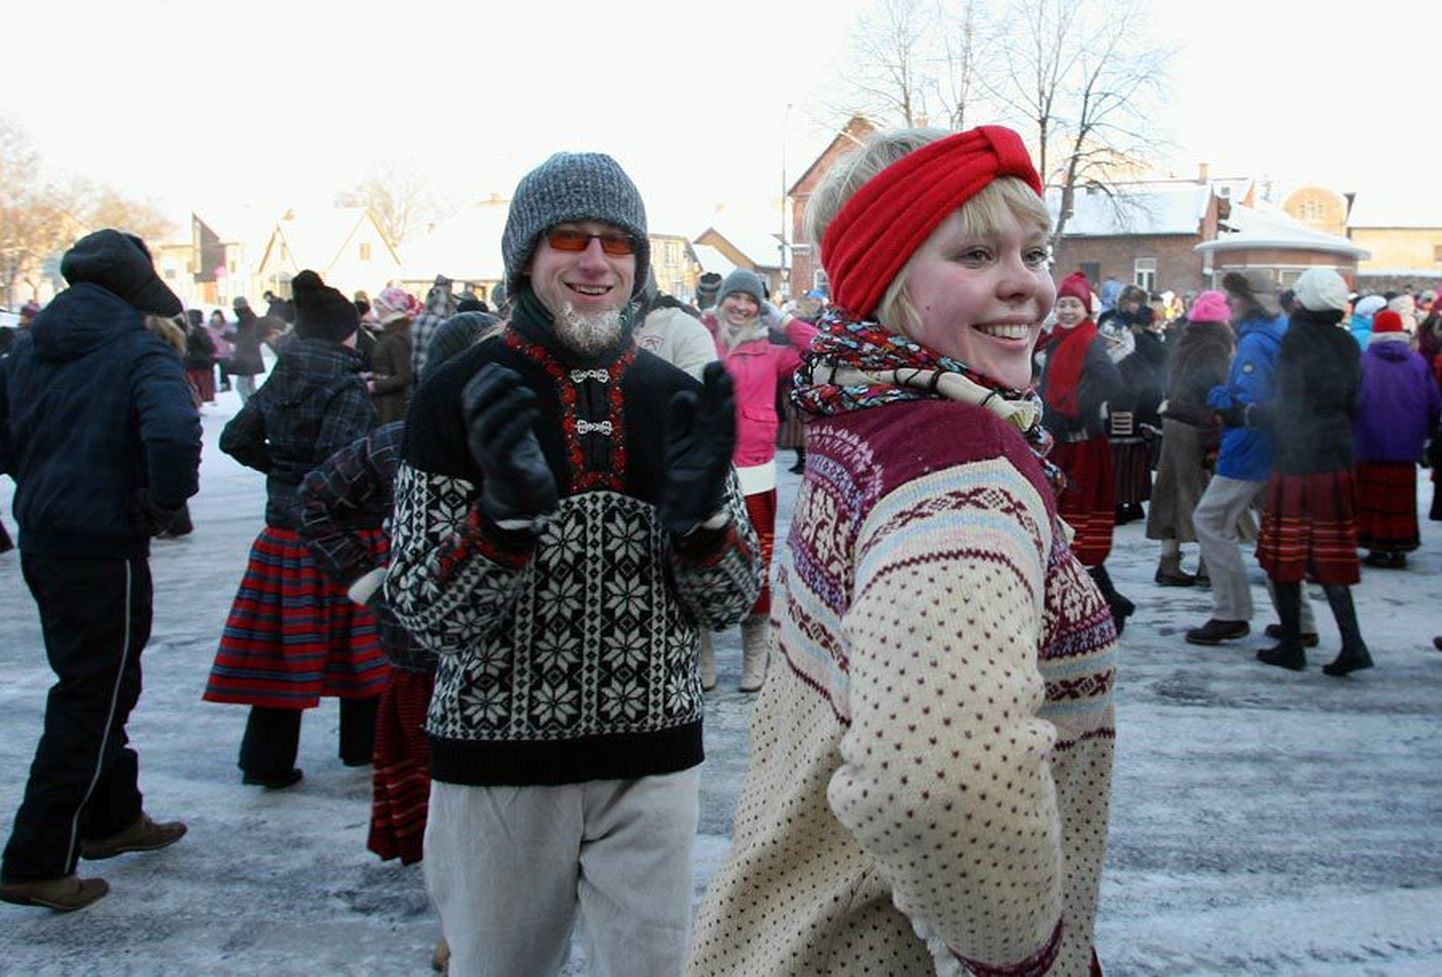 Naerusuud on olnud Viljandi talvise tantsupeo kaubamärk selle algusest peale.